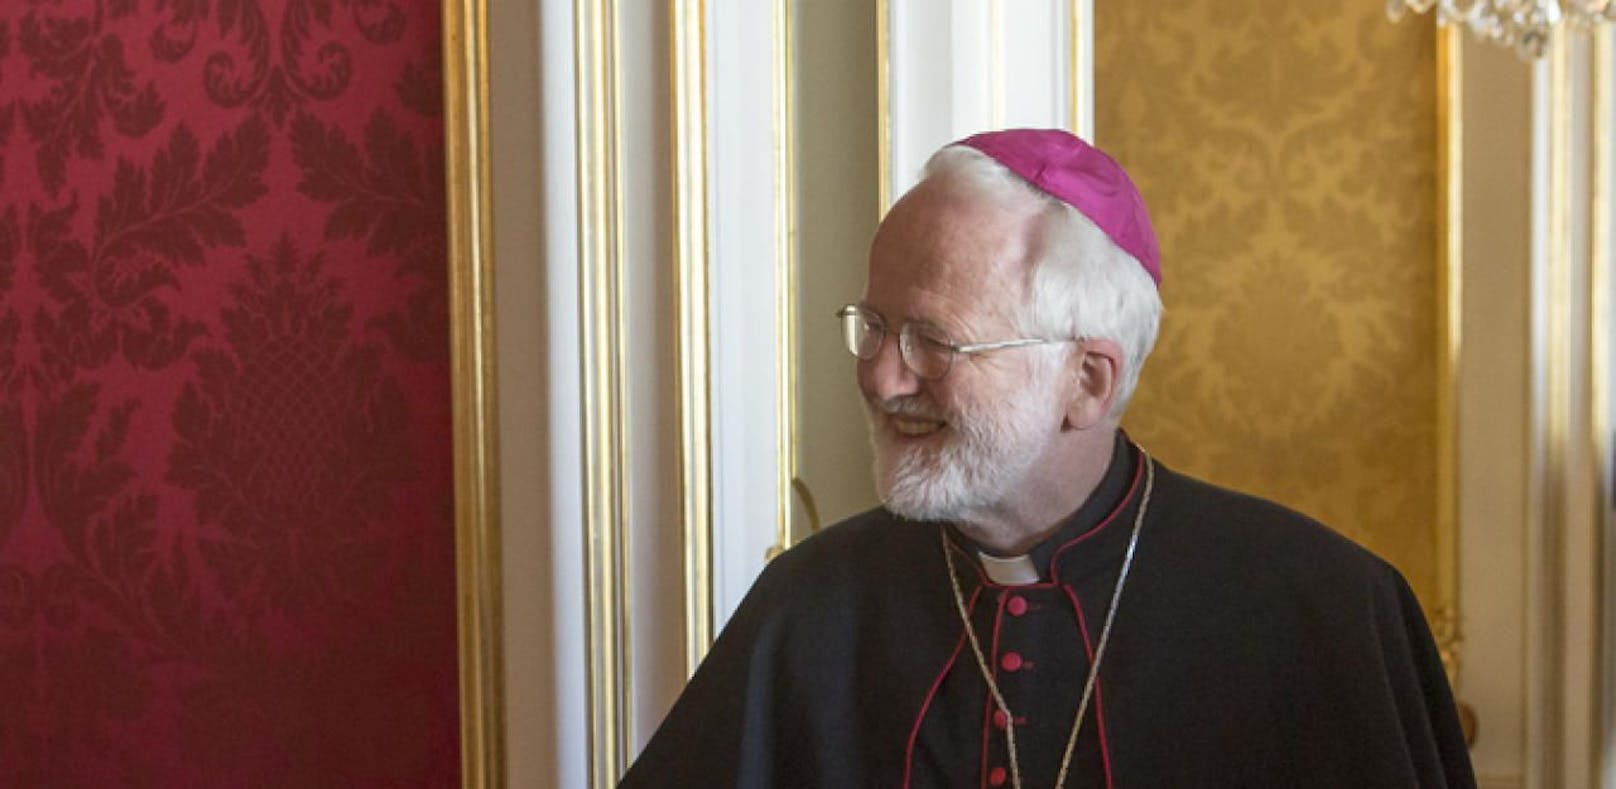 Bischof Laun wegen Schwulen-Hetze angezeigt